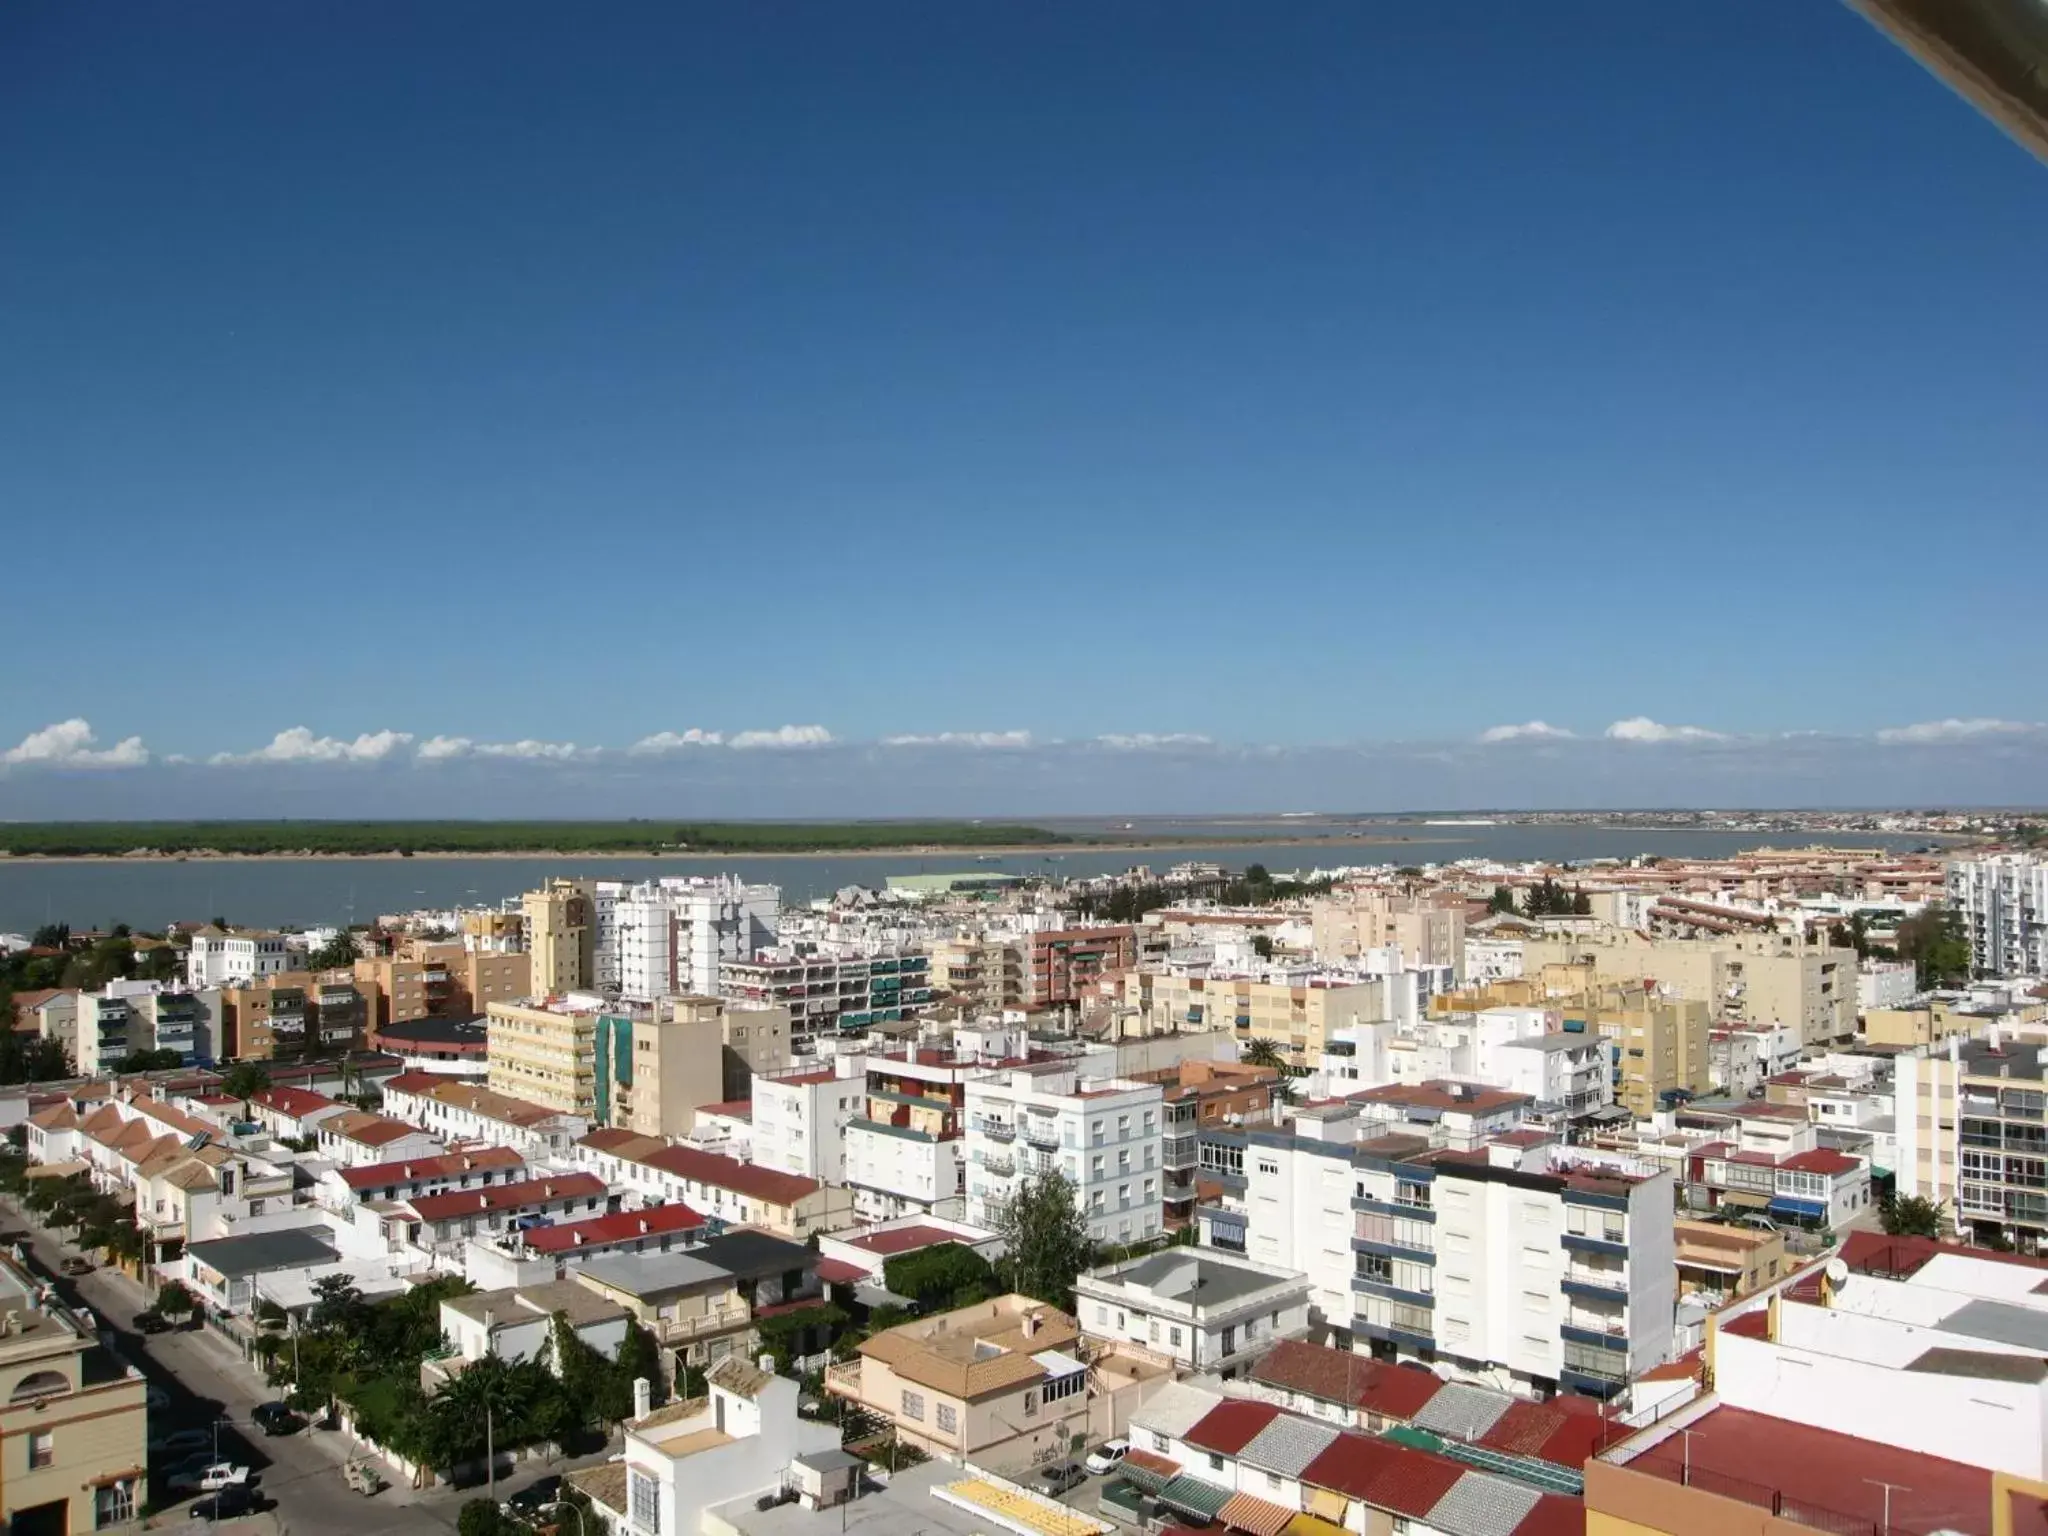 Bird's eye view in Hotel Guadalquivir